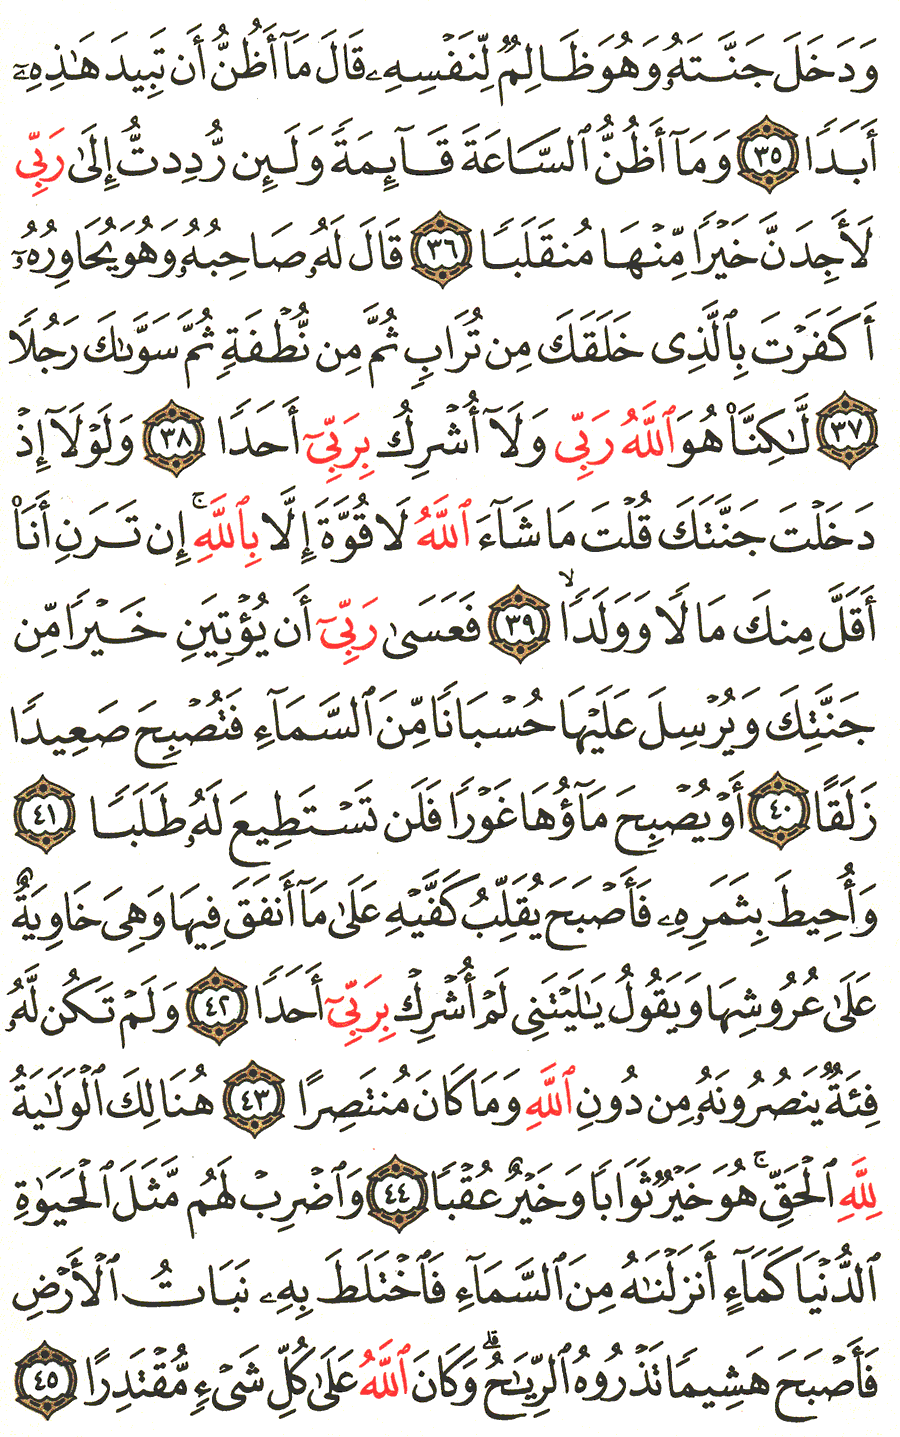 الصفحة 298 من القرآن الكريم